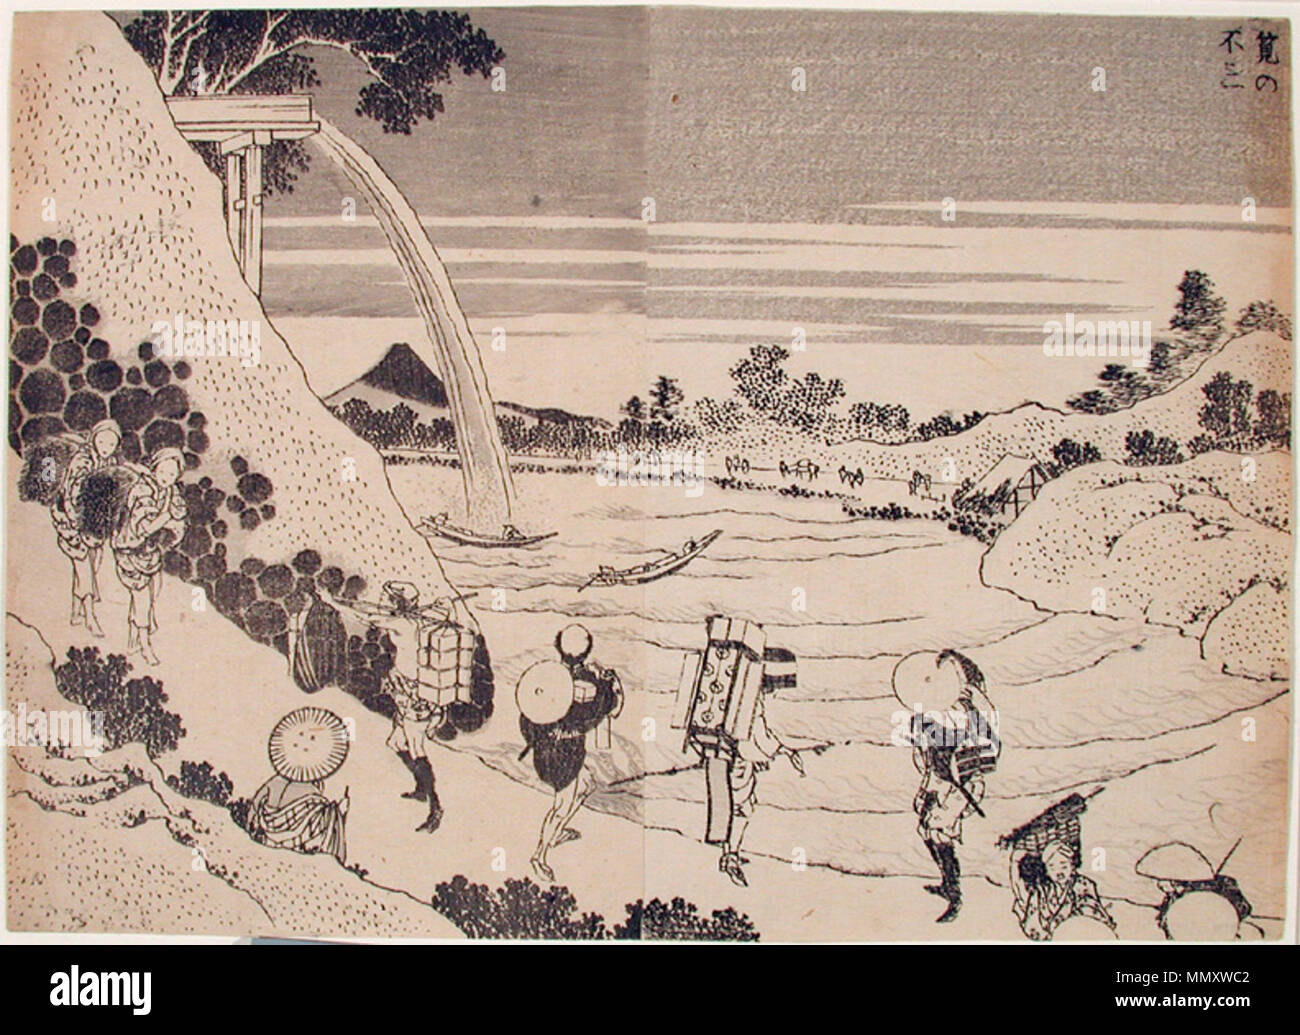 . English: Accession Number: 1965.94.16 Display Artist: Katsushika Hokusai Display Title: Fuji from the Conduit Series Title: One Hundred Views of Mount Fuji Suite Name: Fugaku hyakkei Creation Date: 1834-1835 Height: 7 3/16 in. Width: 9 7/8 in. Display Dimensions: 7 3/16 in. x 9 7/8 in. (18.26 cm x 25.08 cm) Publisher: Nishimuraya Yuzo Credit Line: Gift of Mrs. Harold Rhody Witherbee Label Copy: 'Cada cortesana est nombrada en los grabados. A la izquierda, sosteniendo un libro, est Hanado. Luego, Tamino se ajusta una horquilla, y en el centro Hanazome muele tinta y lleva un pincel de caligraf Stock Photo